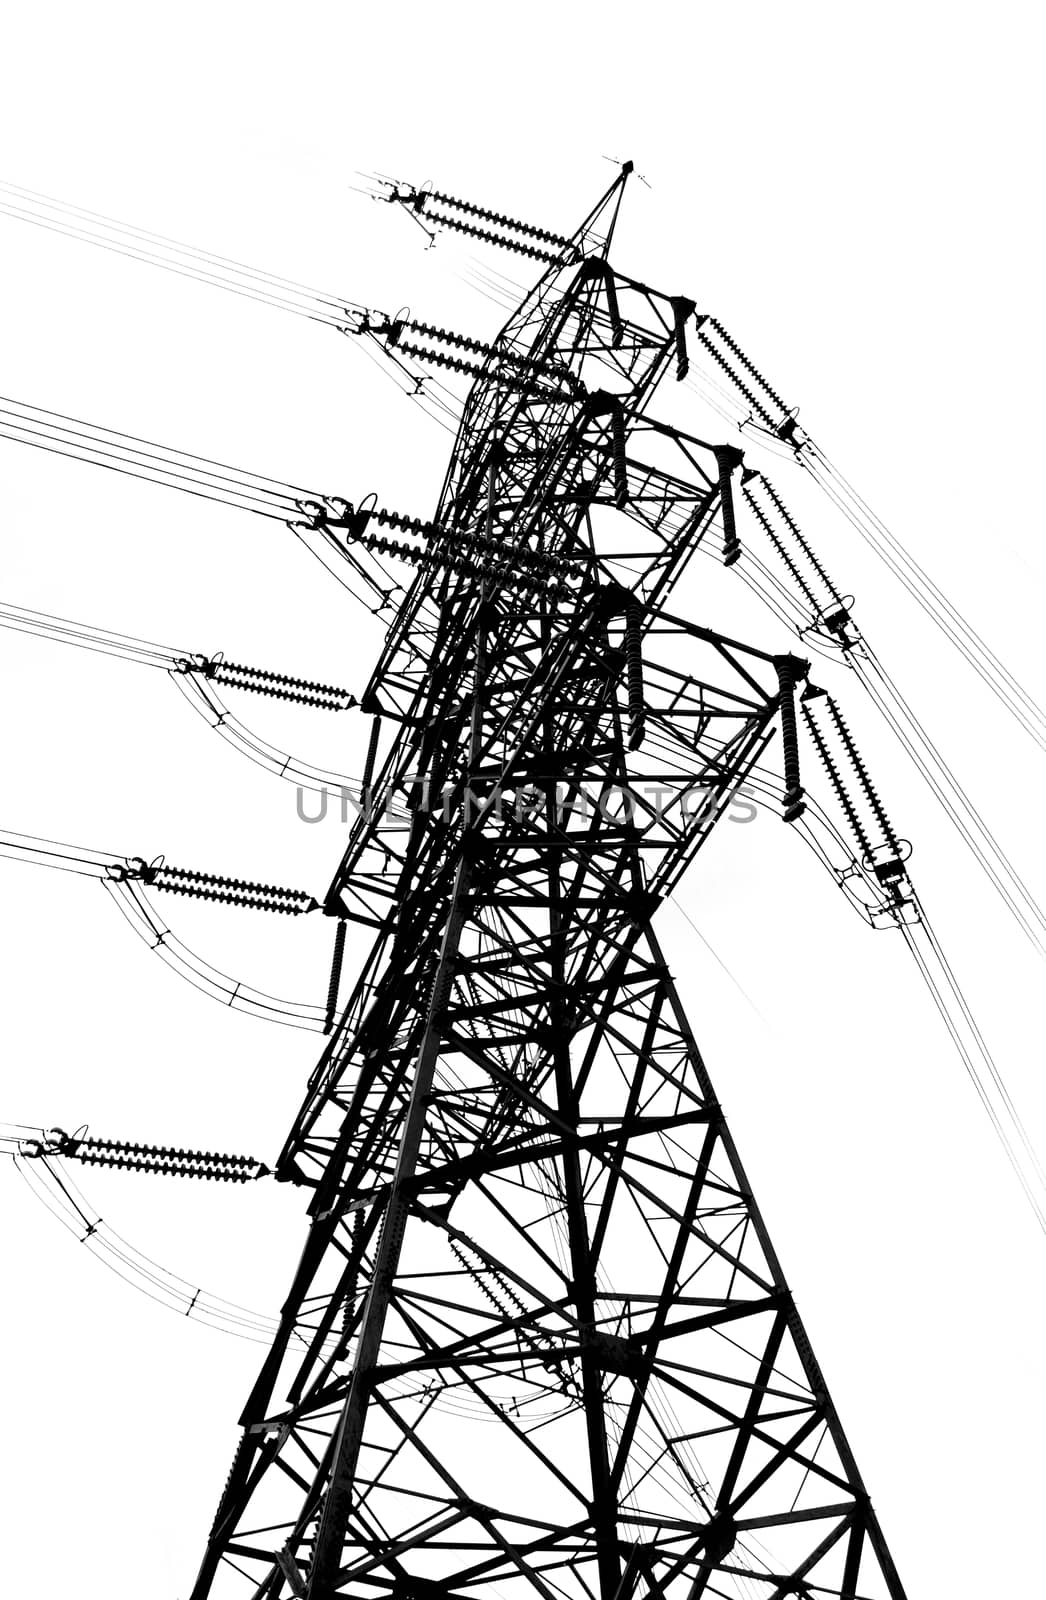 Tall High Voltage Power Mast by shiyali